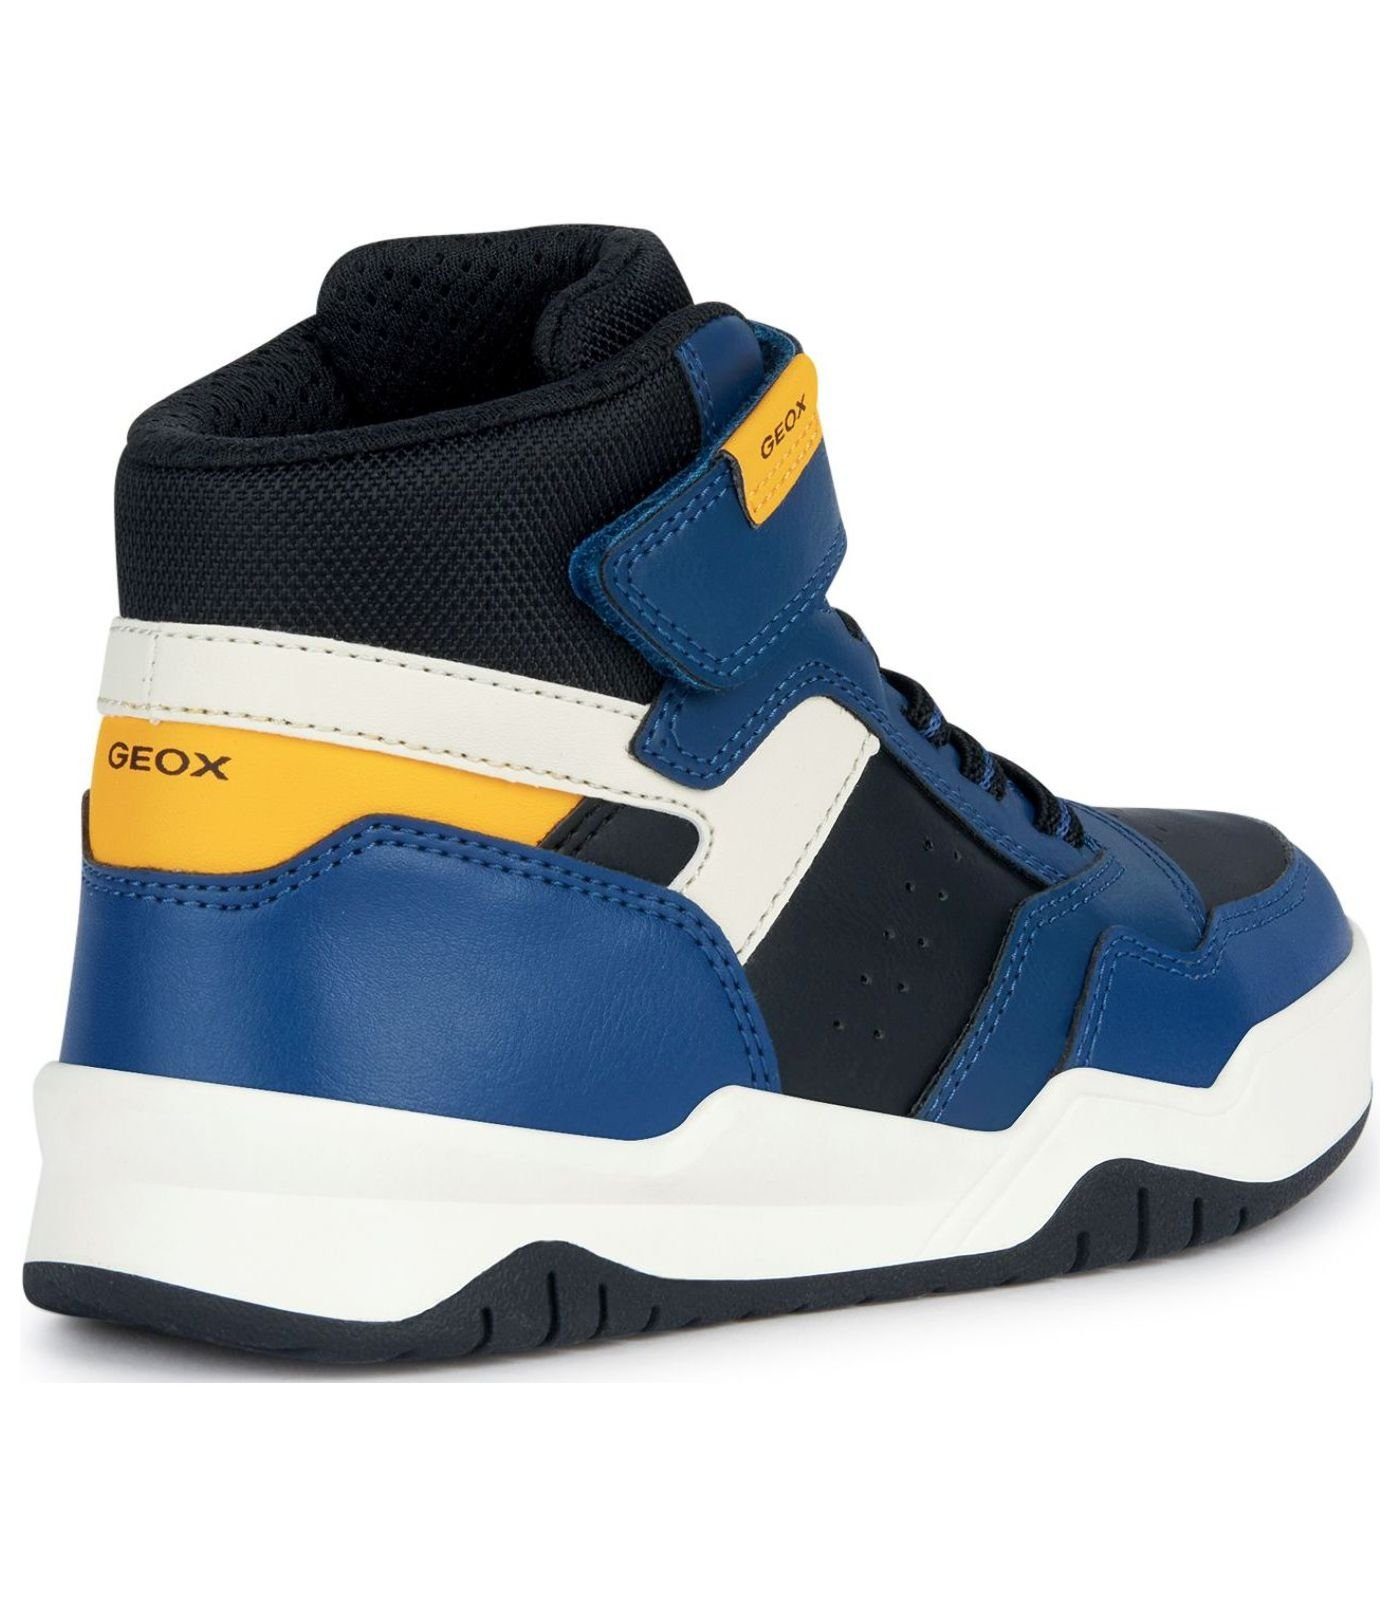 Lederimitat/Textil Geox Sneaker Blau Sneaker Gelb